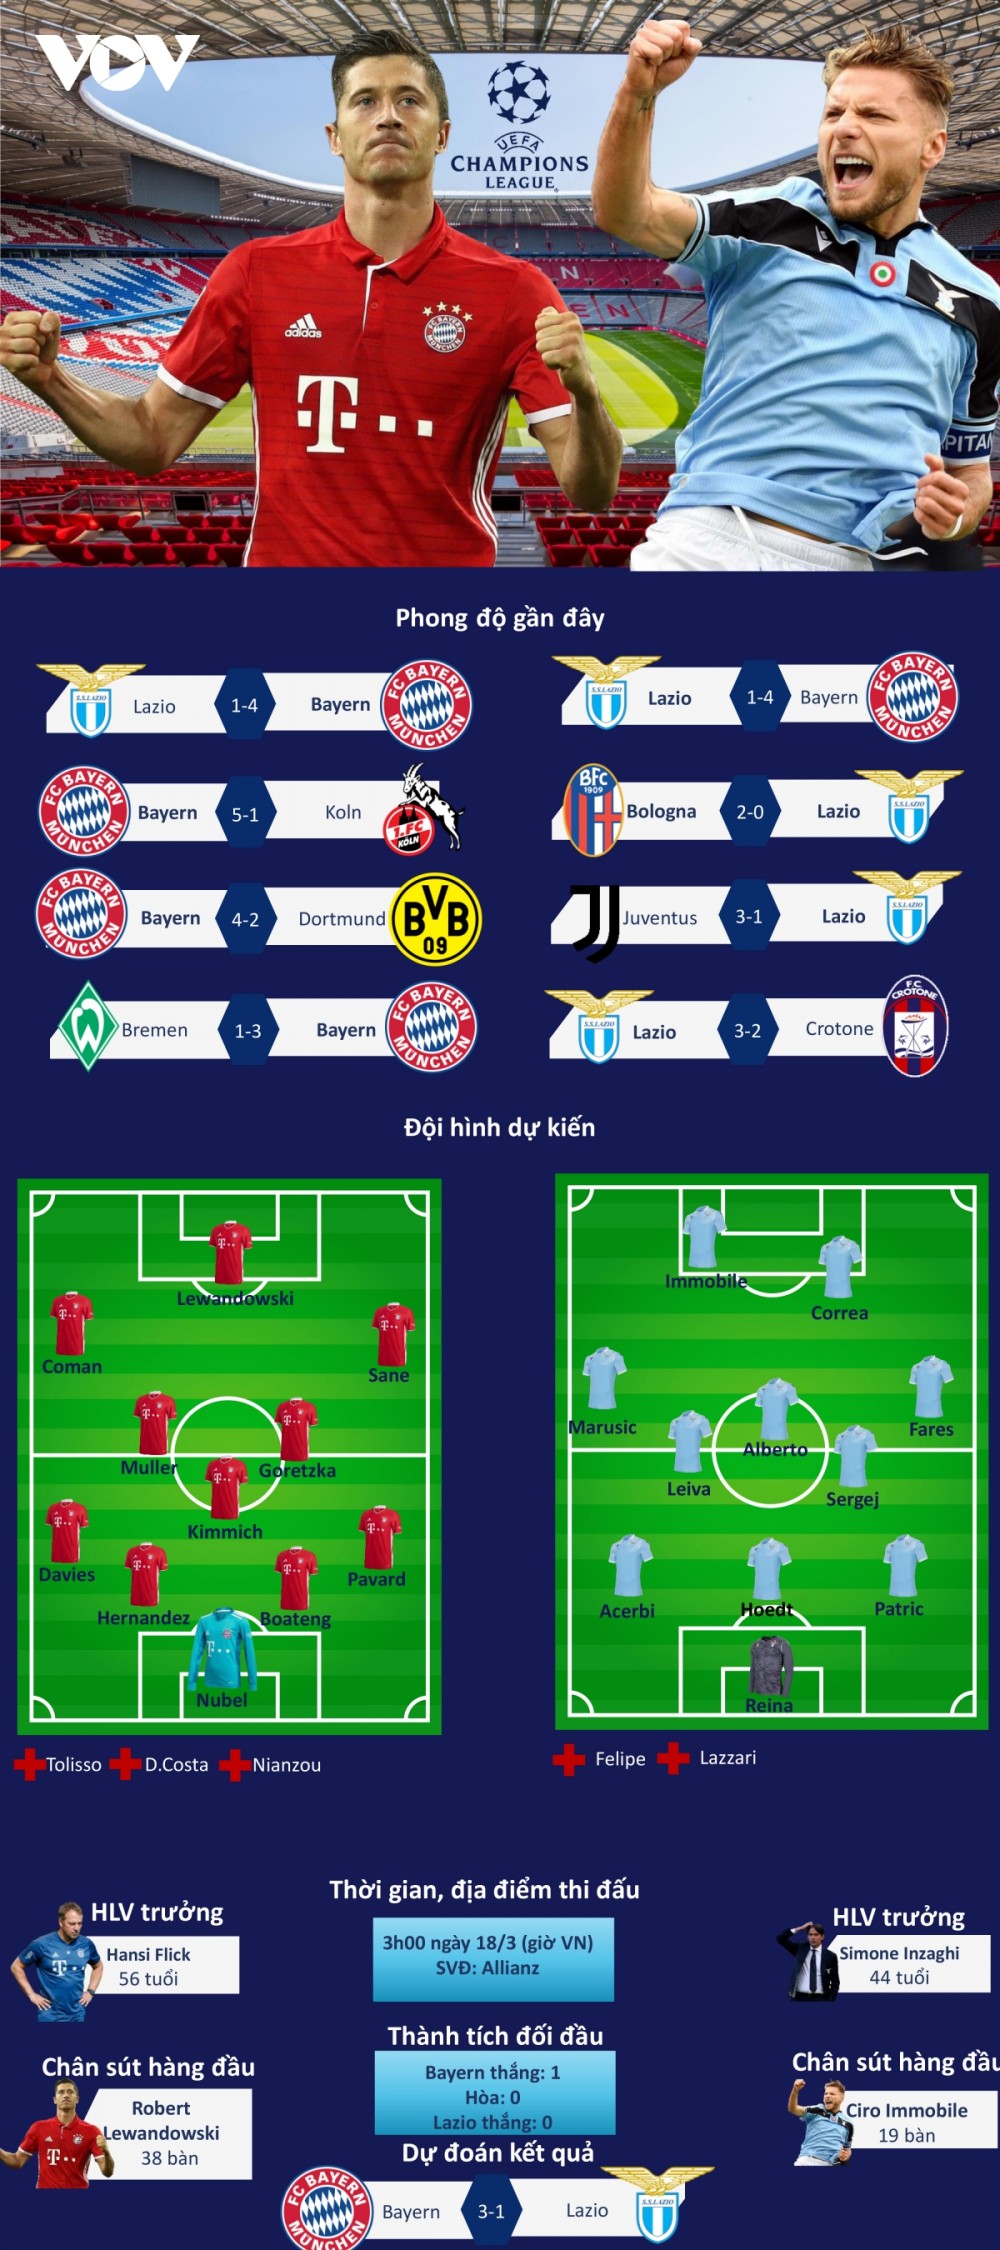 Champions League: Dự đoán kết quả, đội hình xuất phát trận Bayern Munich - Lazio và Chelsea - Atletico